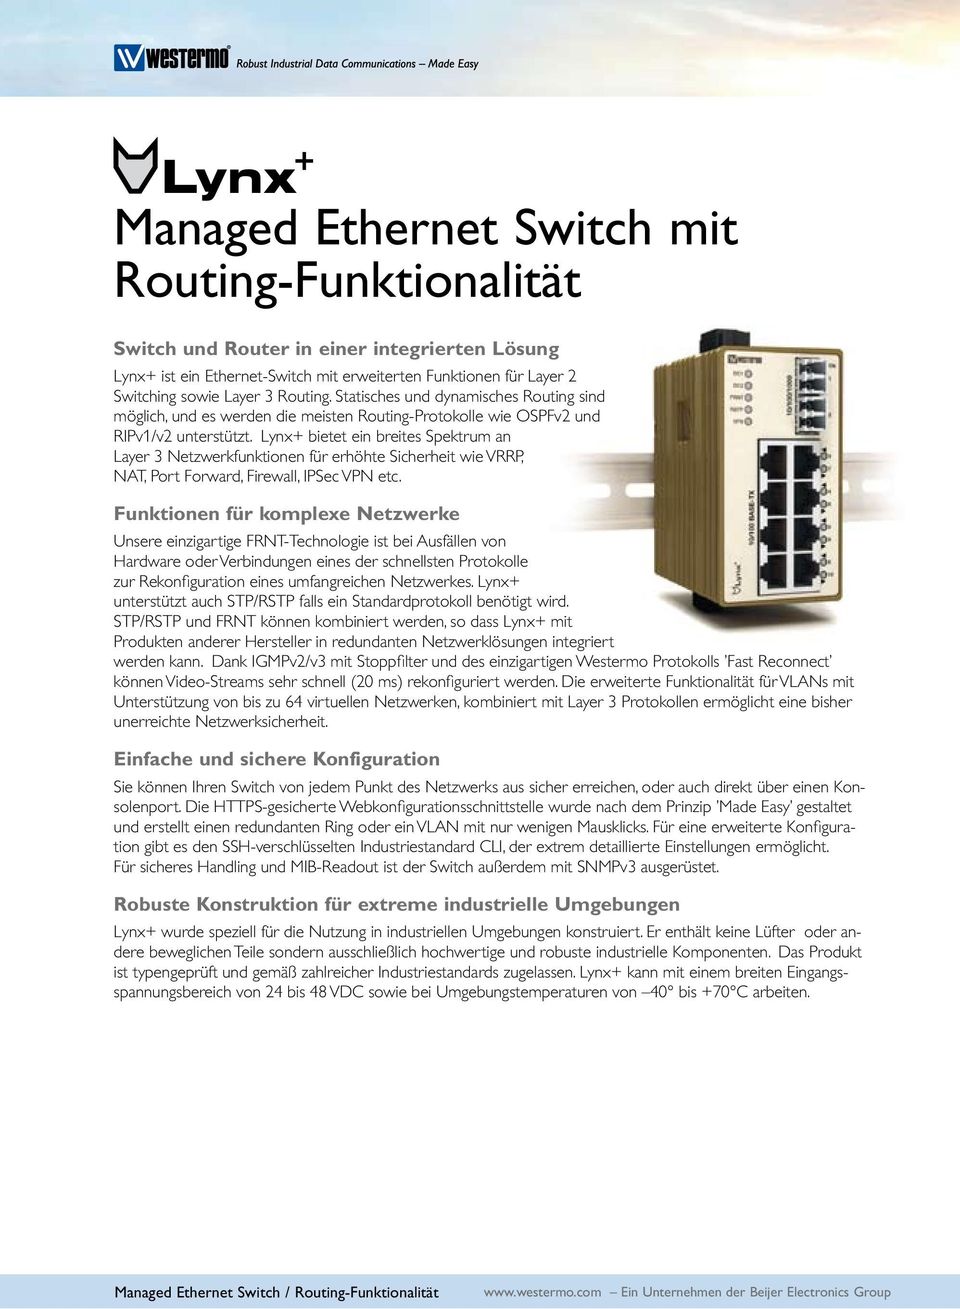 Lynx+ bietet ein breites Spektrum an Layer 3 Netzwerkfunktionen für erhöhte Sicherheit wie VRRP, NAT, Port Forward, Firewall, IPSec VPN etc.